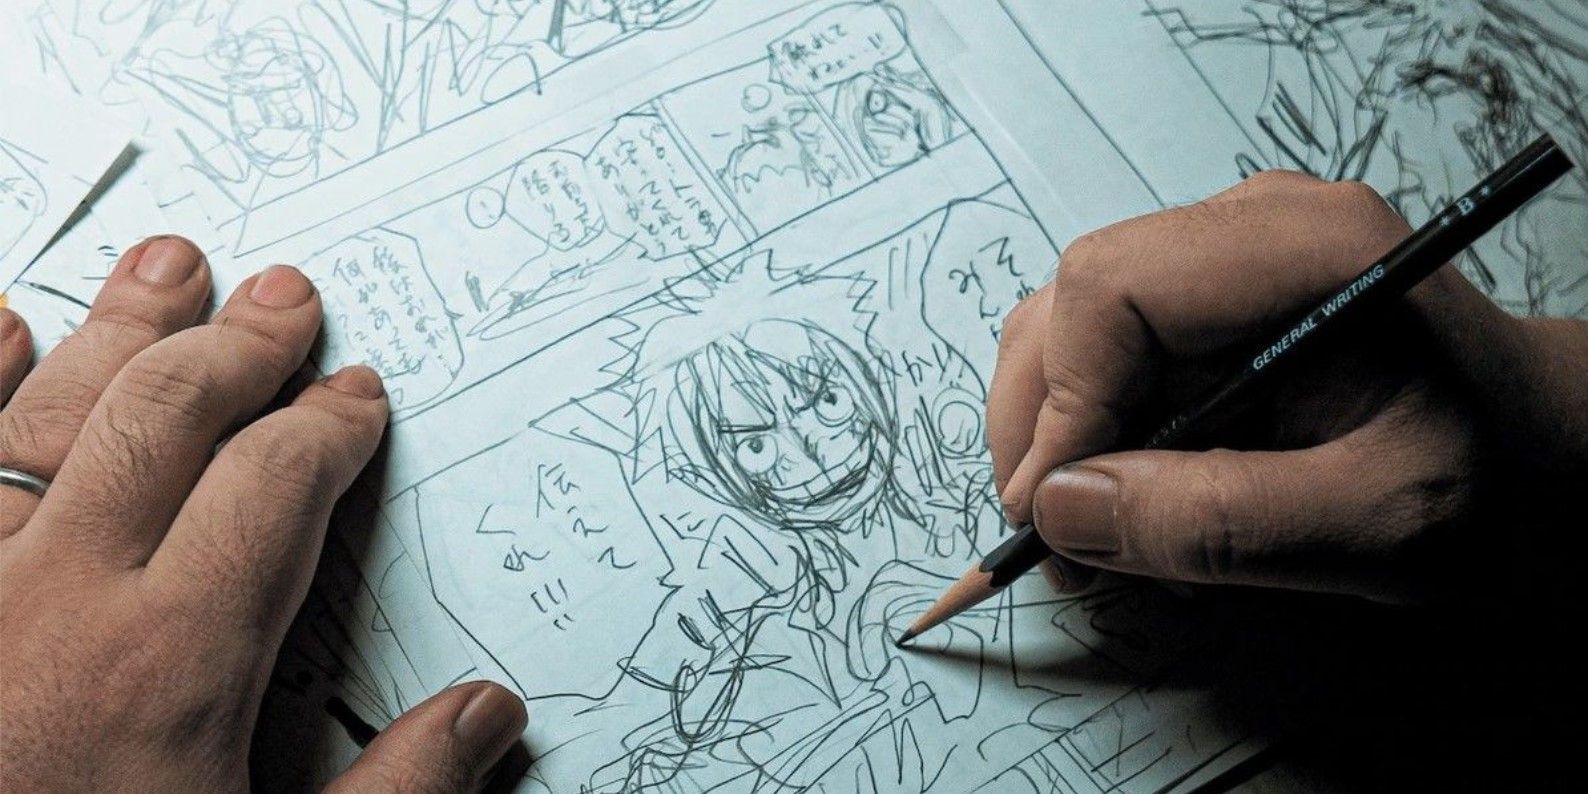 One Piece Creator's High School Art Proves He Always Had Talent